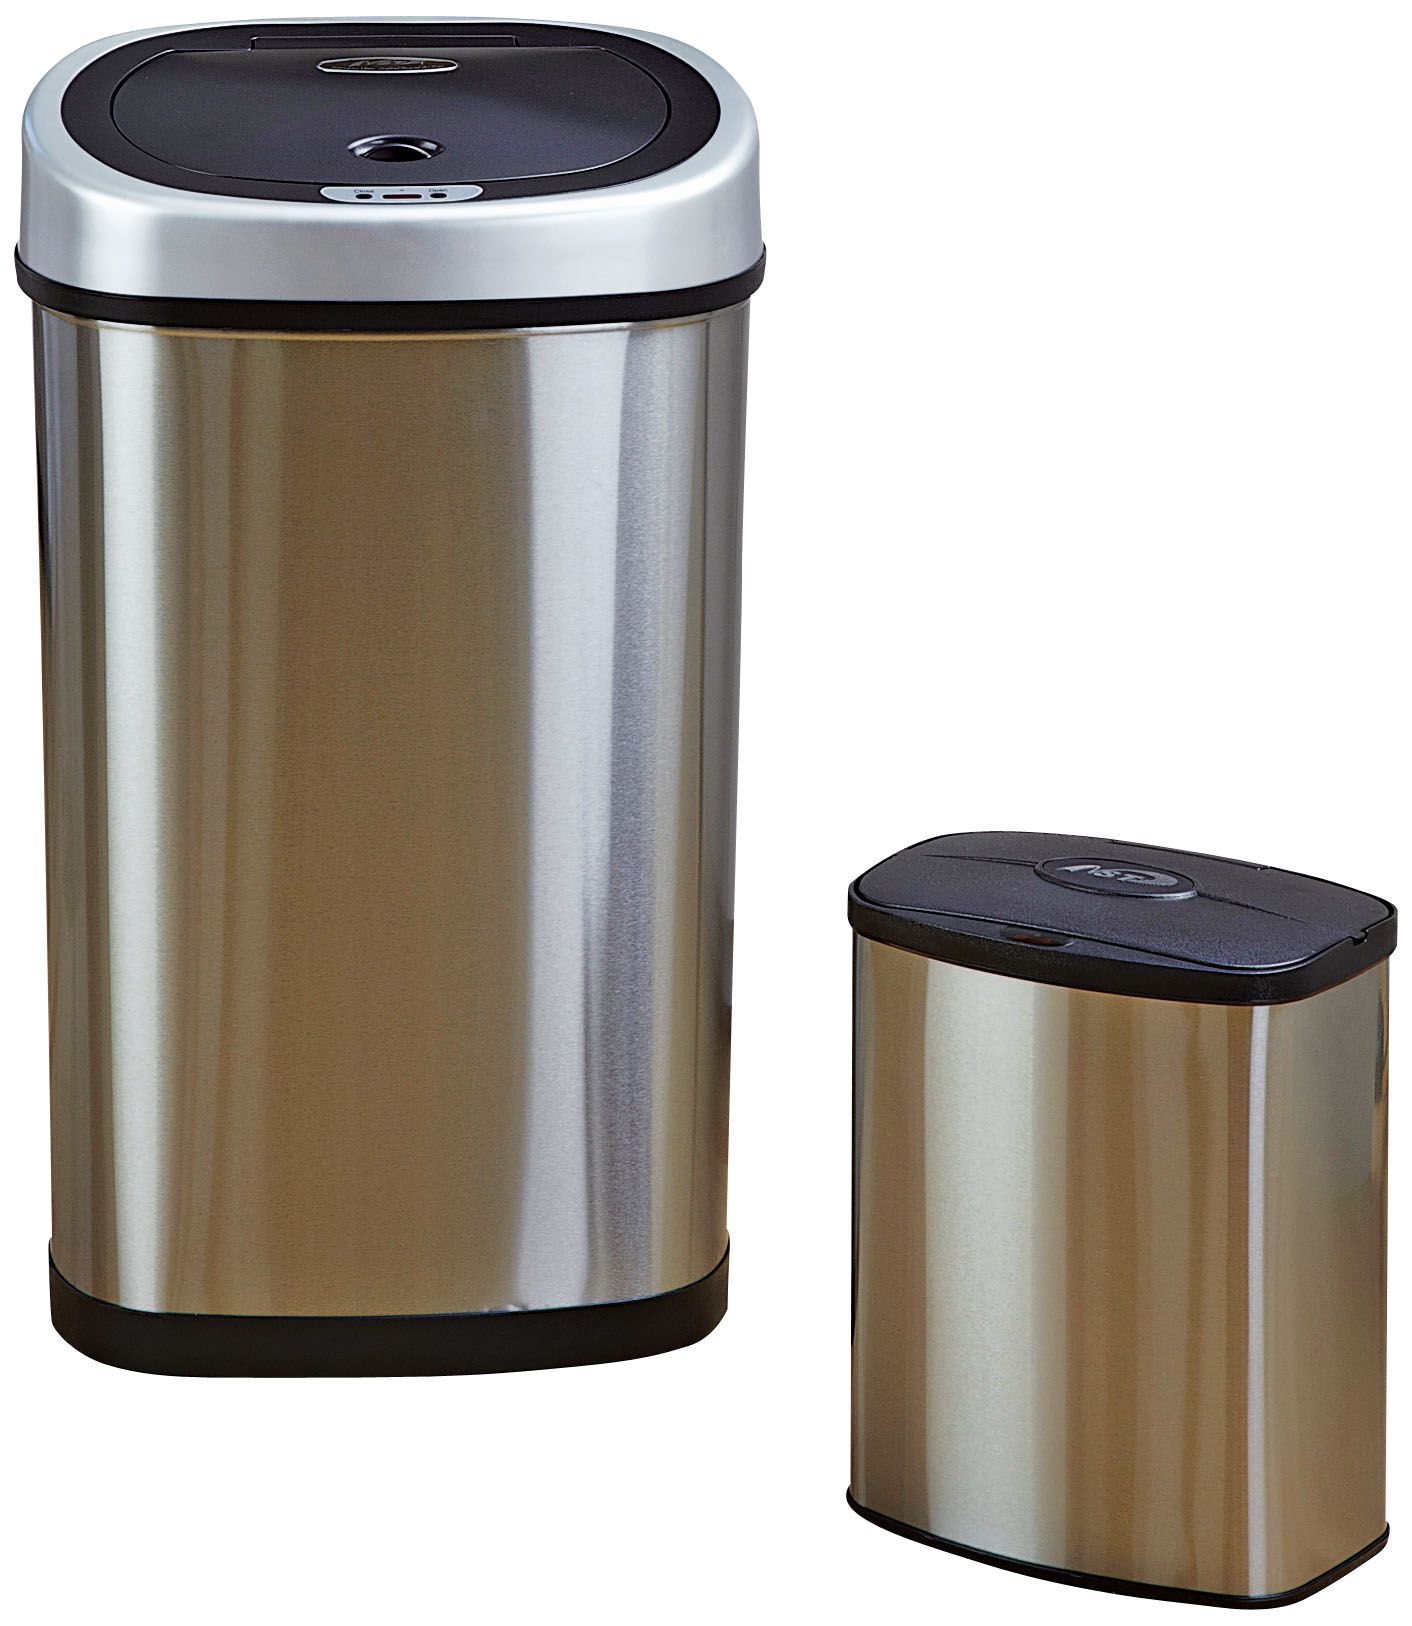 Ninestars 21.1 Gallon Stainless Steel Motion Sensor Trash Can